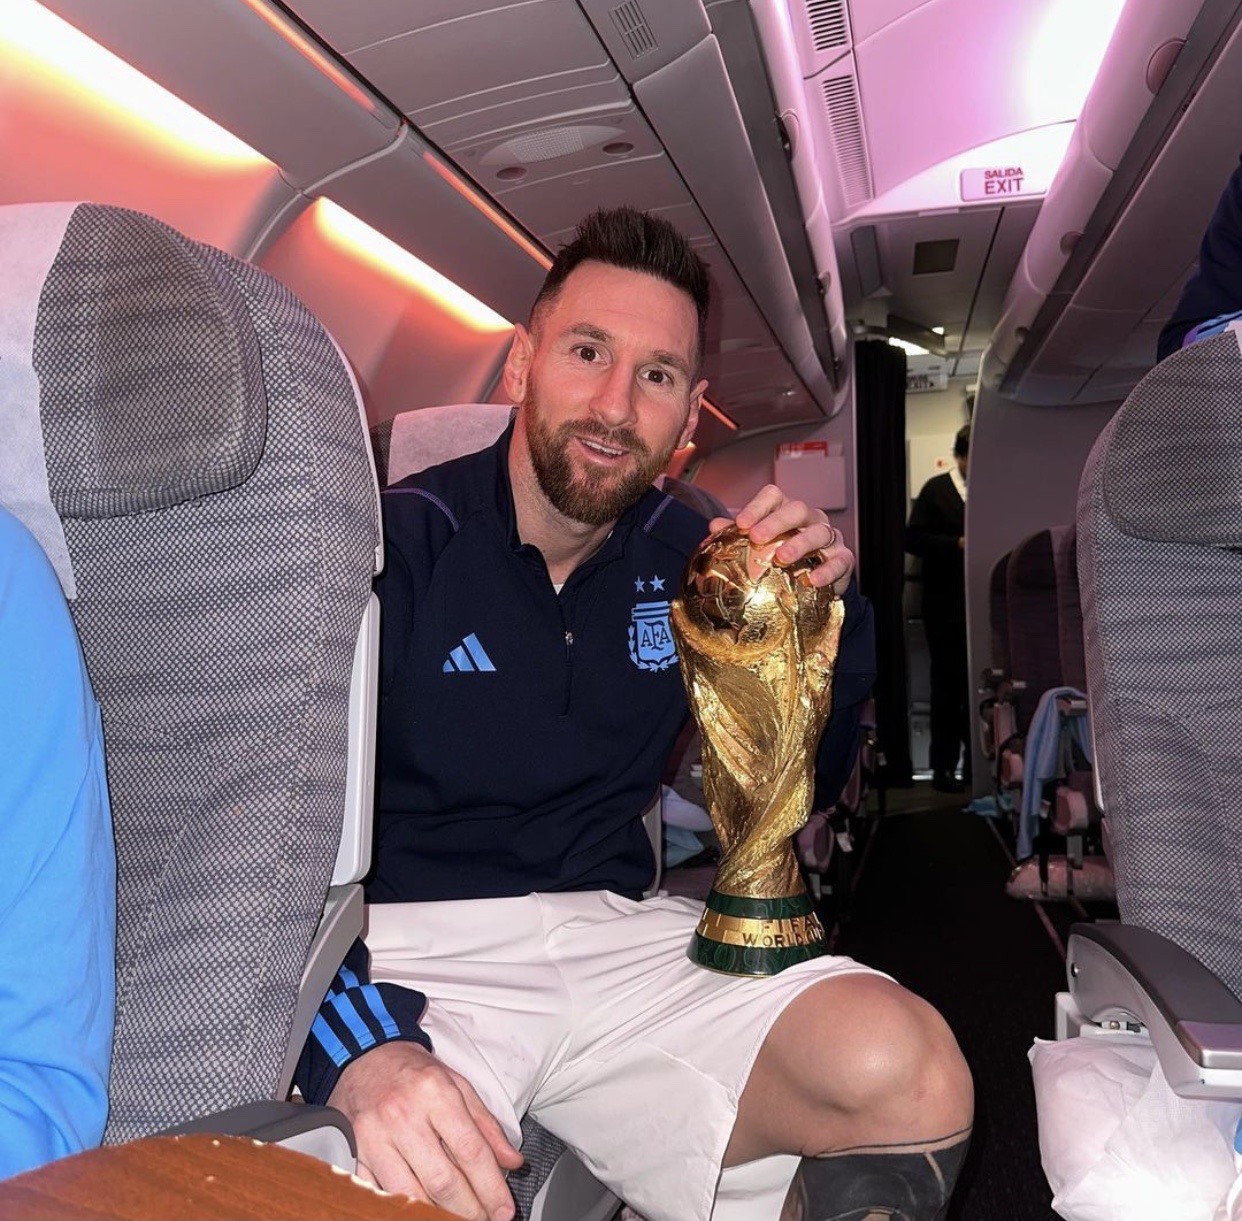 Biển người khuấy động khán đài, mỗi suất bàn thắng cũng vang lên như một trận động đất khi Messi tham gia giải đấu. Bên cạnh đó là chiếc cúp vô địch giàu ý nghĩa đang chờ đợi sự xuất sắc của siêu sao Argentina. Click vào hình ảnh để trải nghiệm những giây phút khó quên bên cạnh Messi và chỉ có ở World Cup.